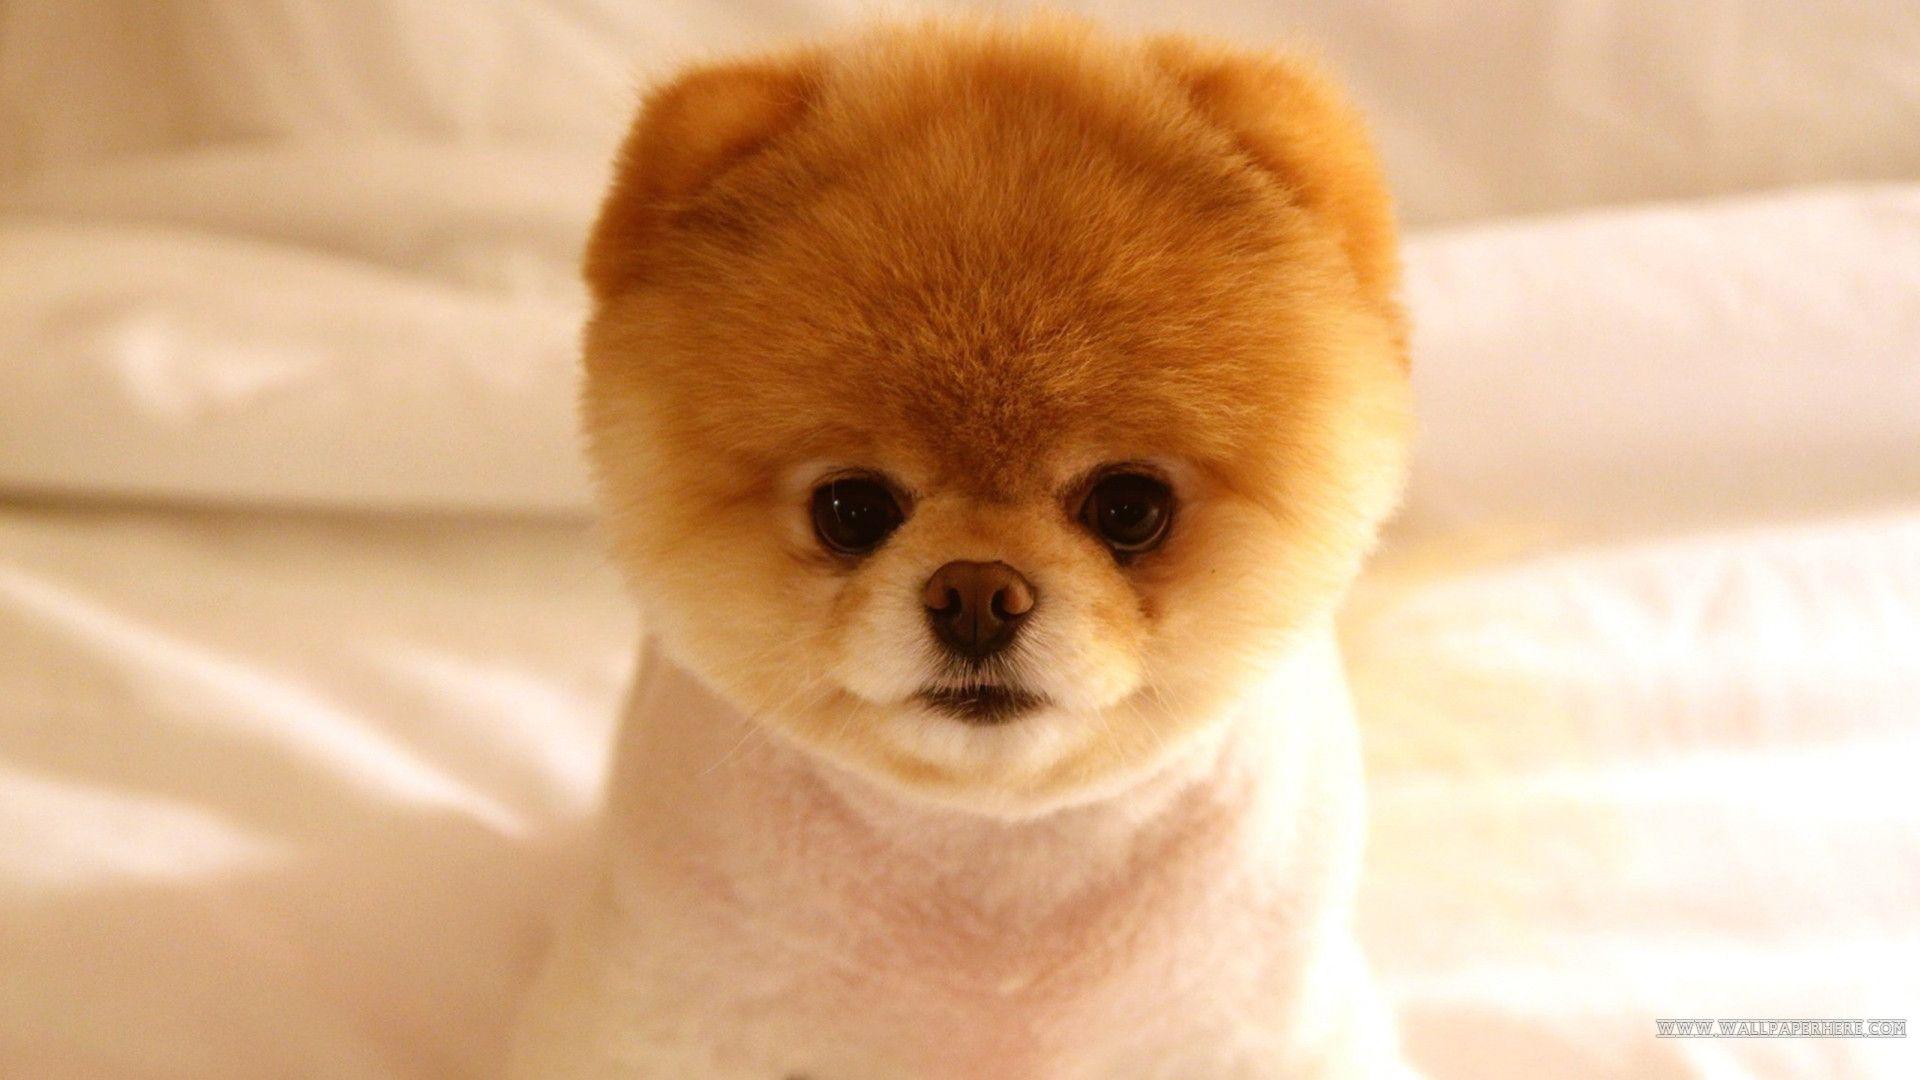 Cute Puppy (id: 165488)